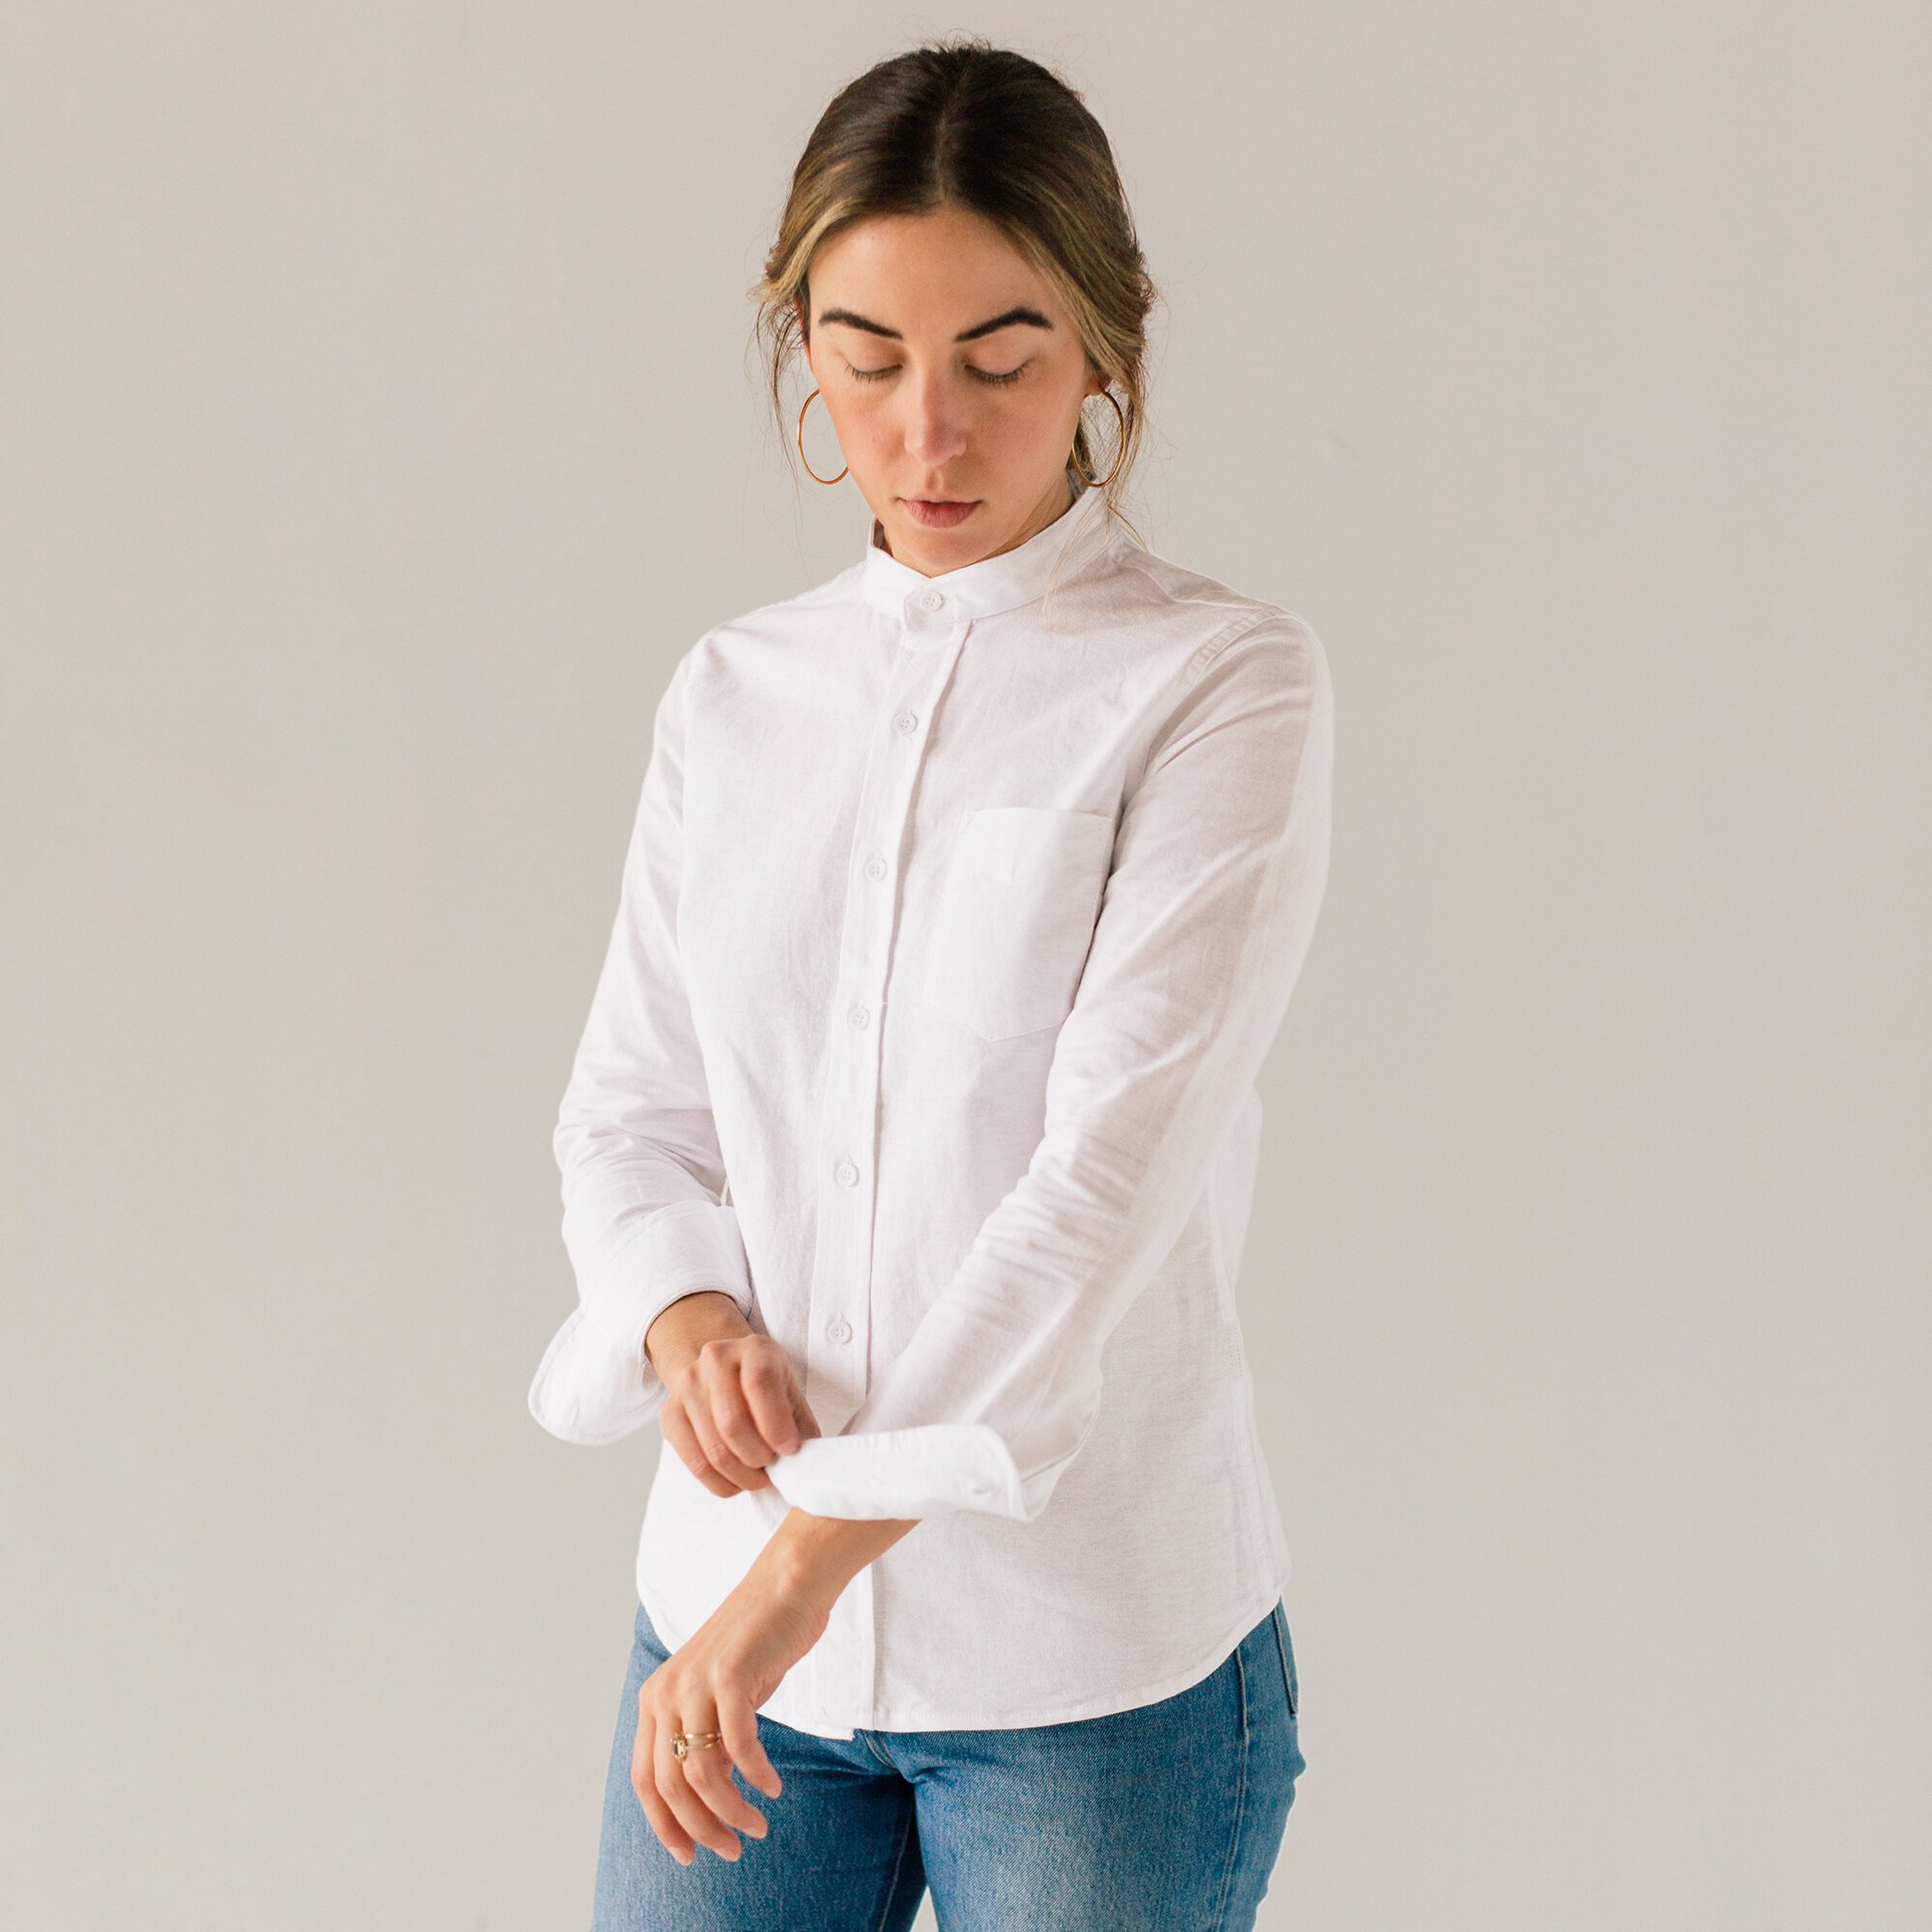 Stock Mfg. Co. Women's White Long Sleeve Banded Collar Shirt - L